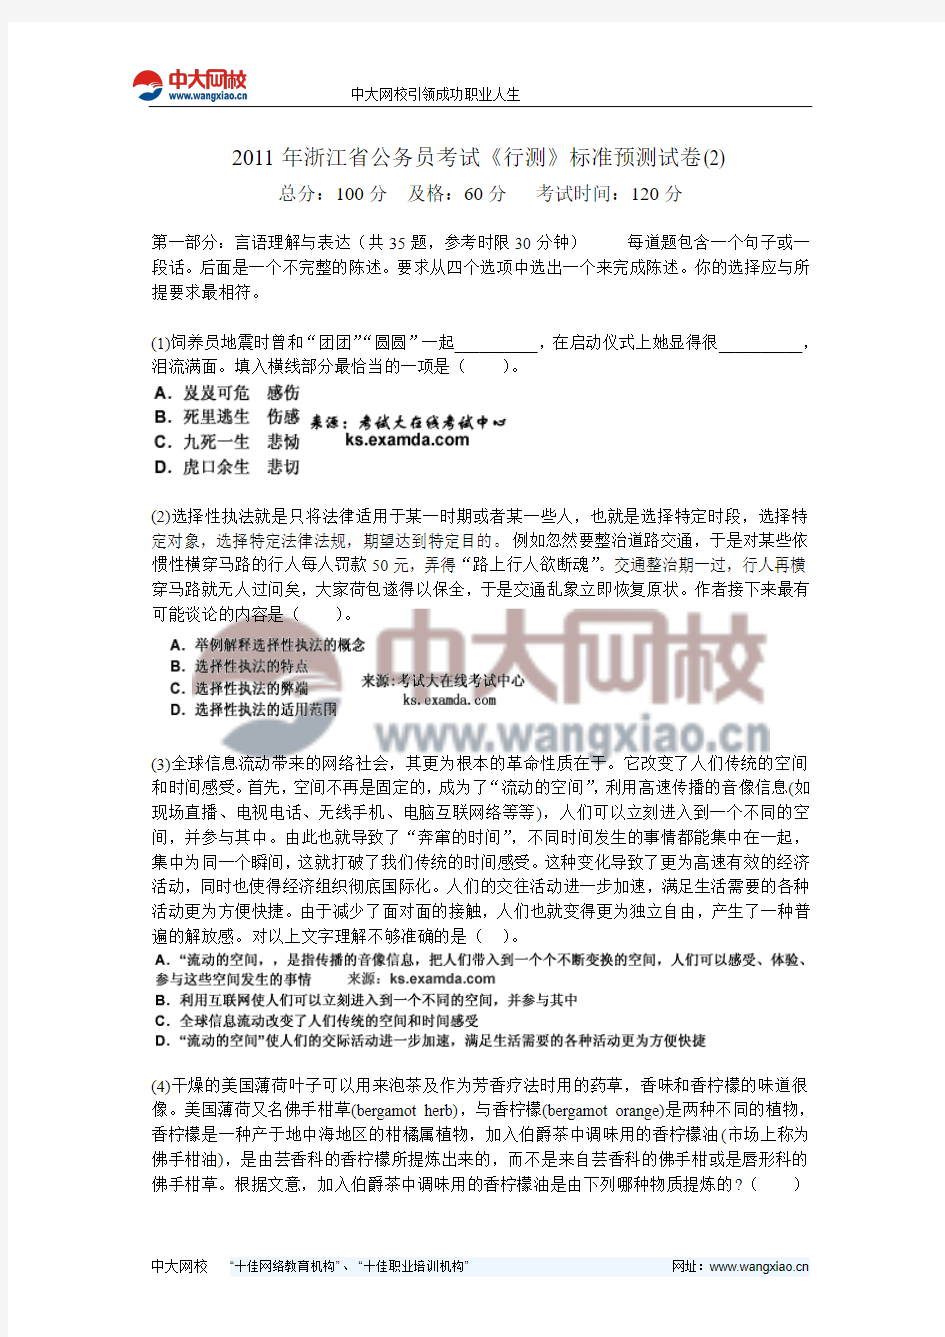 2011年浙江省公务员考试《行测》标准预测试卷(2)-中大网校